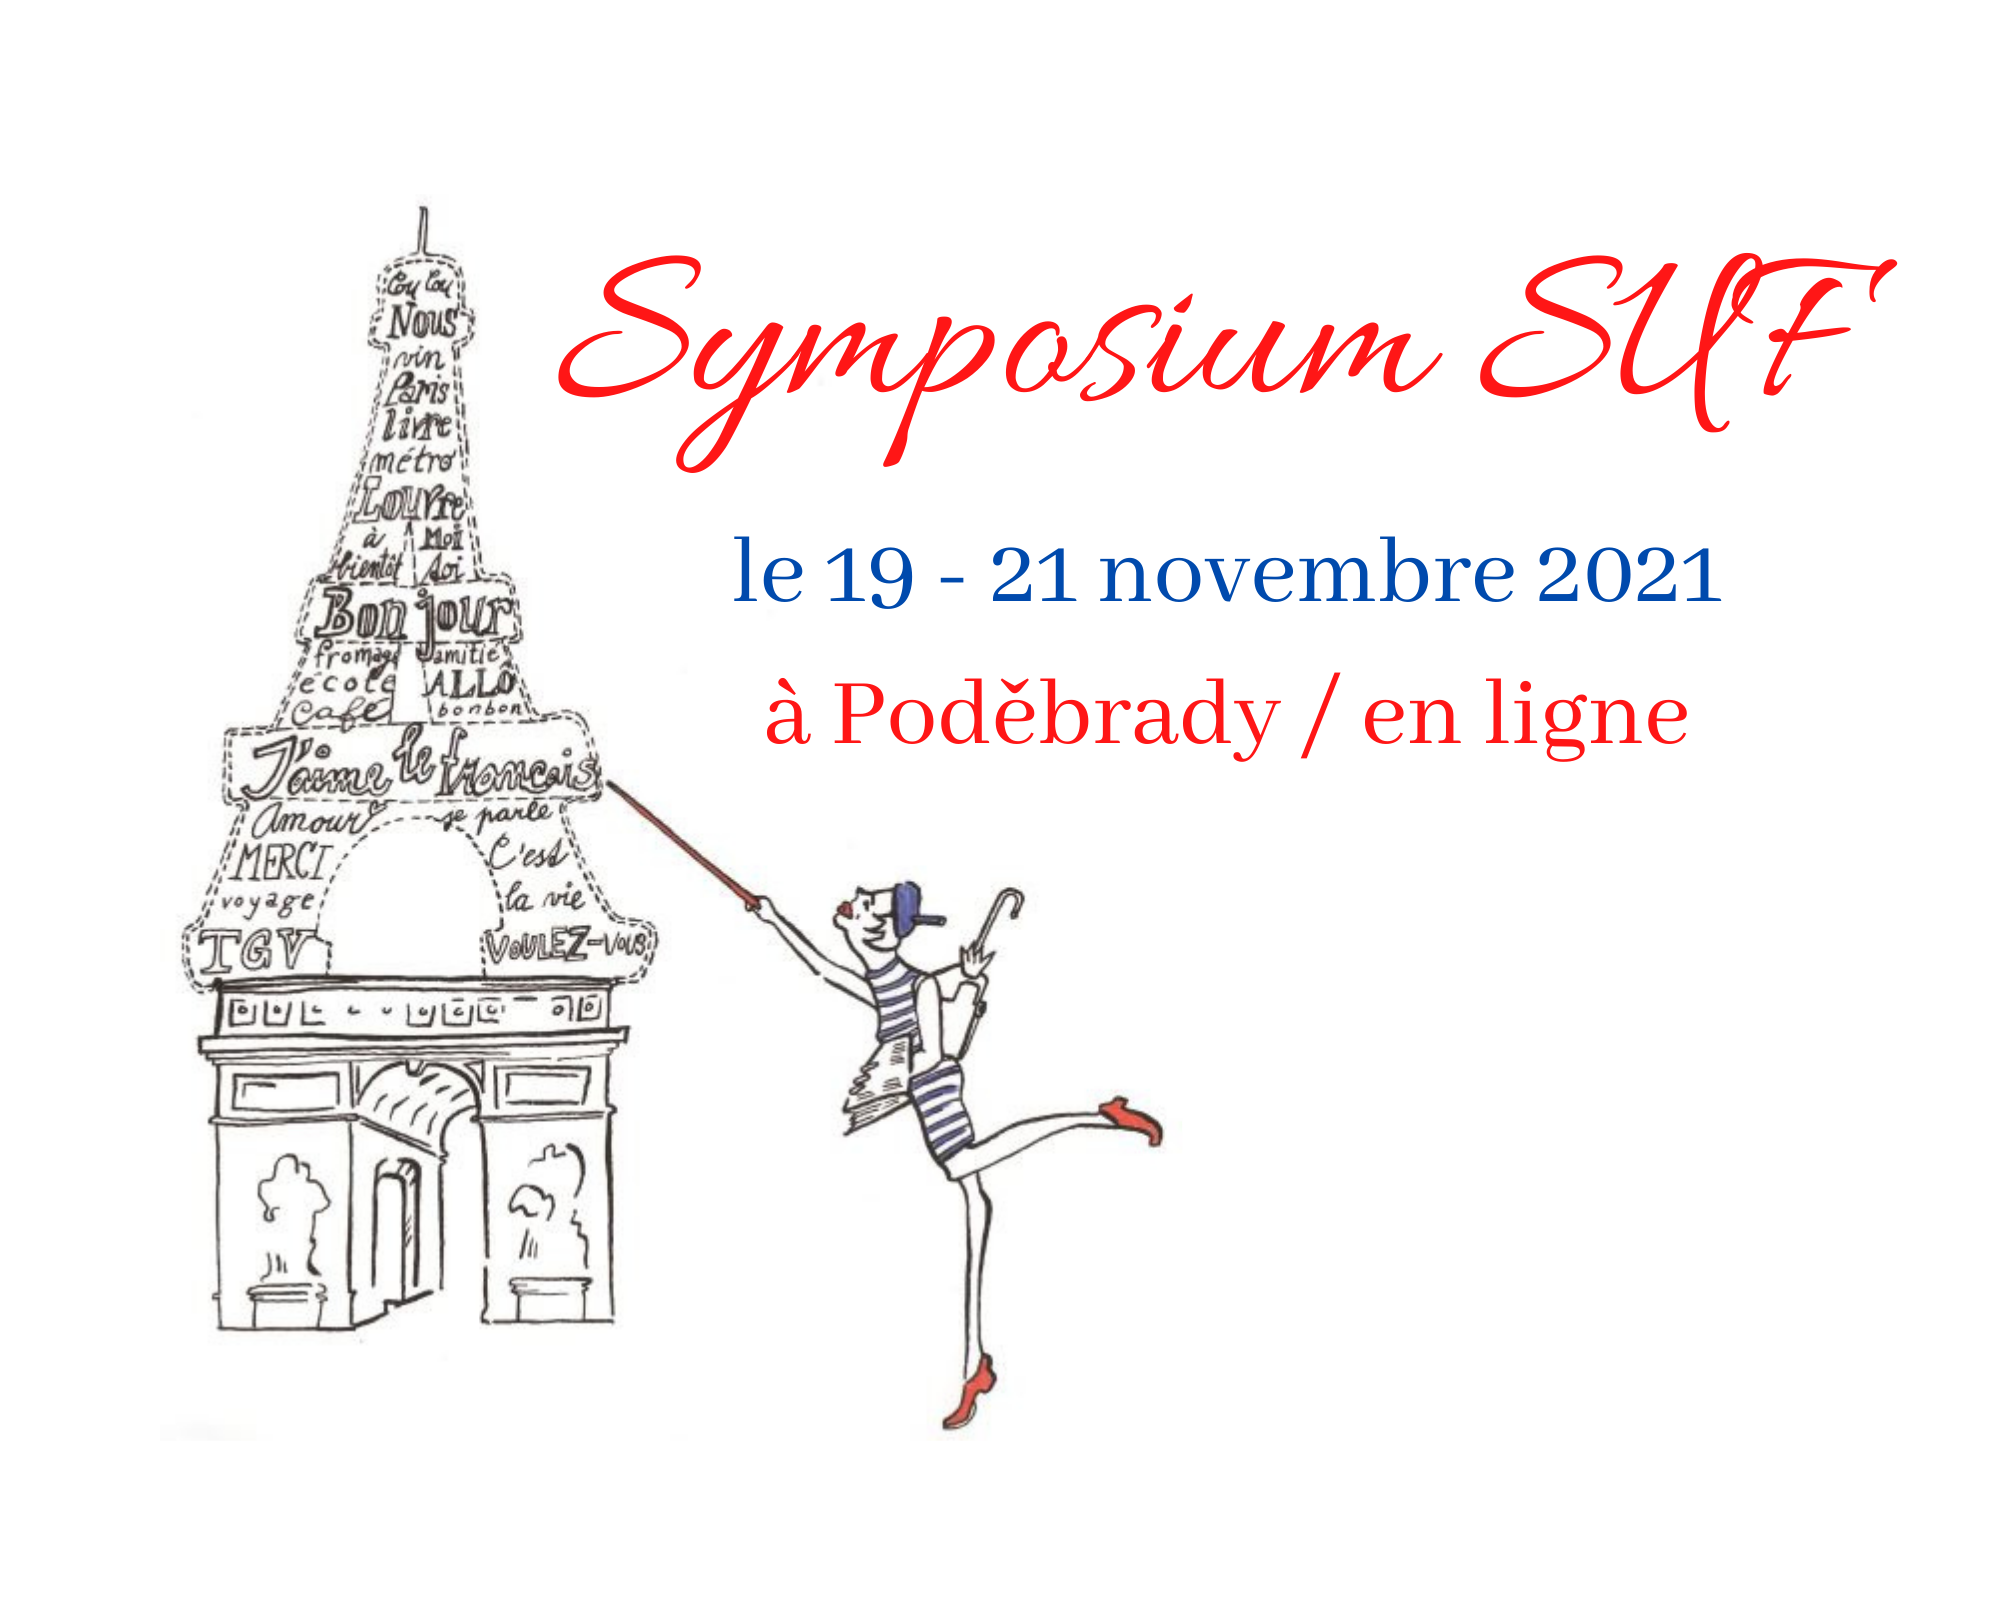 Le XXVIIe Symposium de la SUF 2021